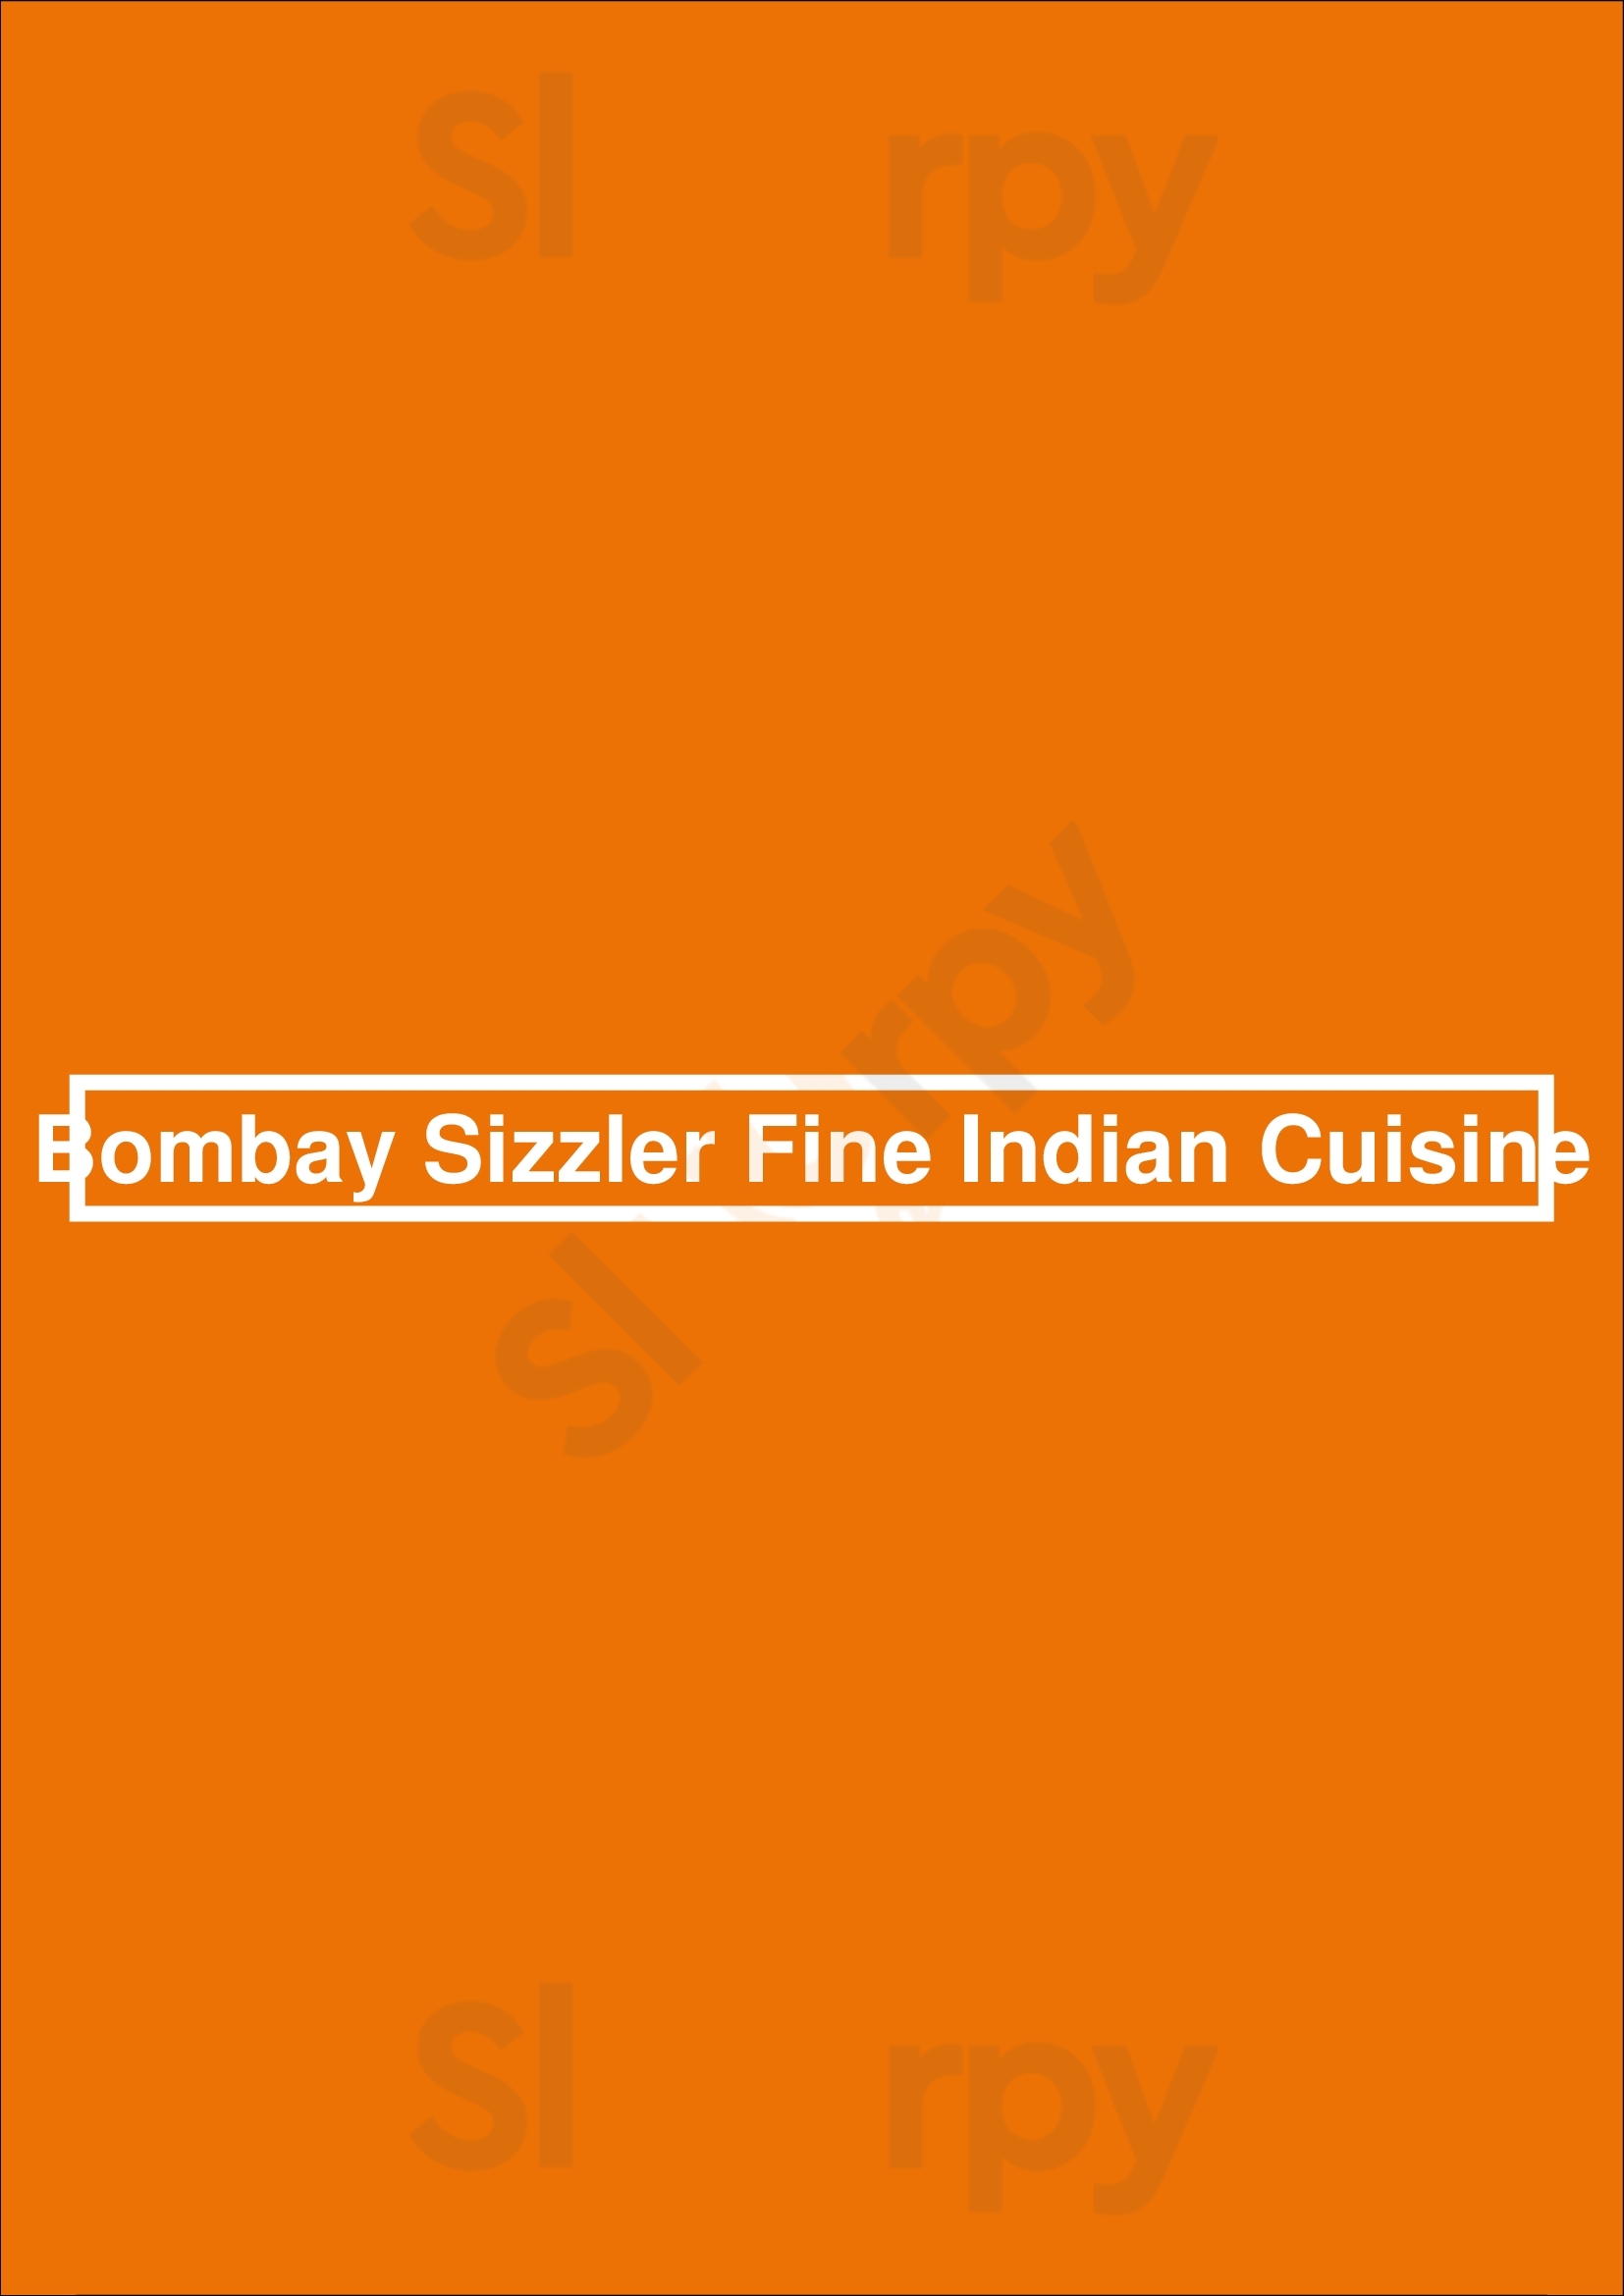 Bombay Sizzler Fine Indian Cuisine Cambridge Menu - 1